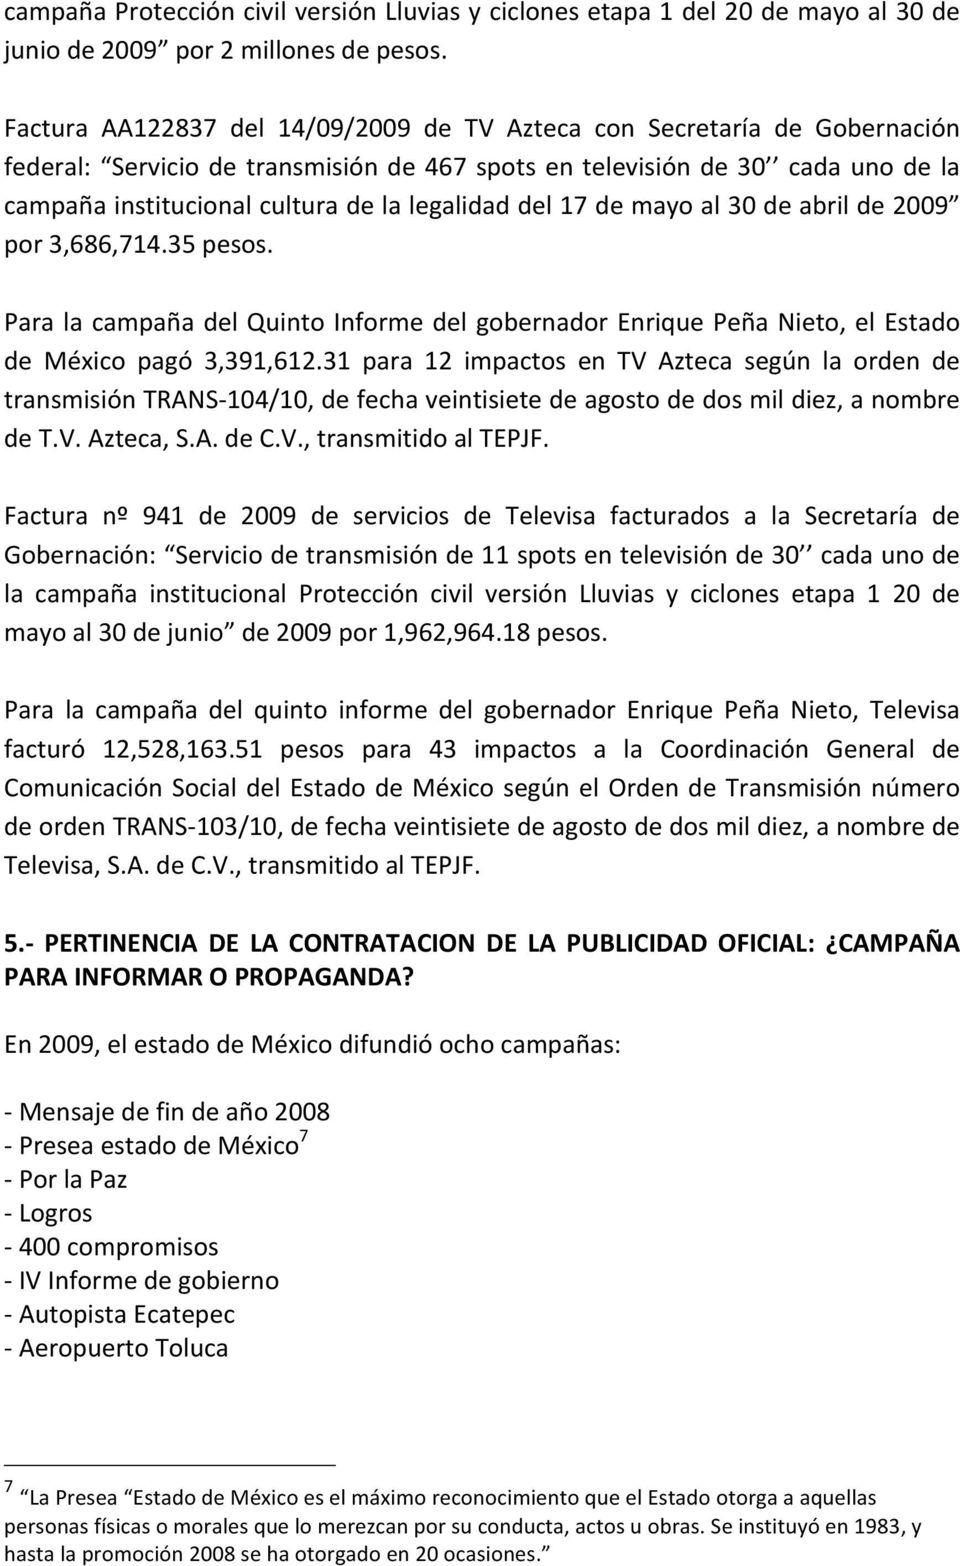 legalidad del 17 de mayo al 30 de abril de 2009 por 3,686,714.35 pesos. Para la campaña del Quinto Informe del gobernador Enrique Peña Nieto, el Estado de México pagó 3,391,612.